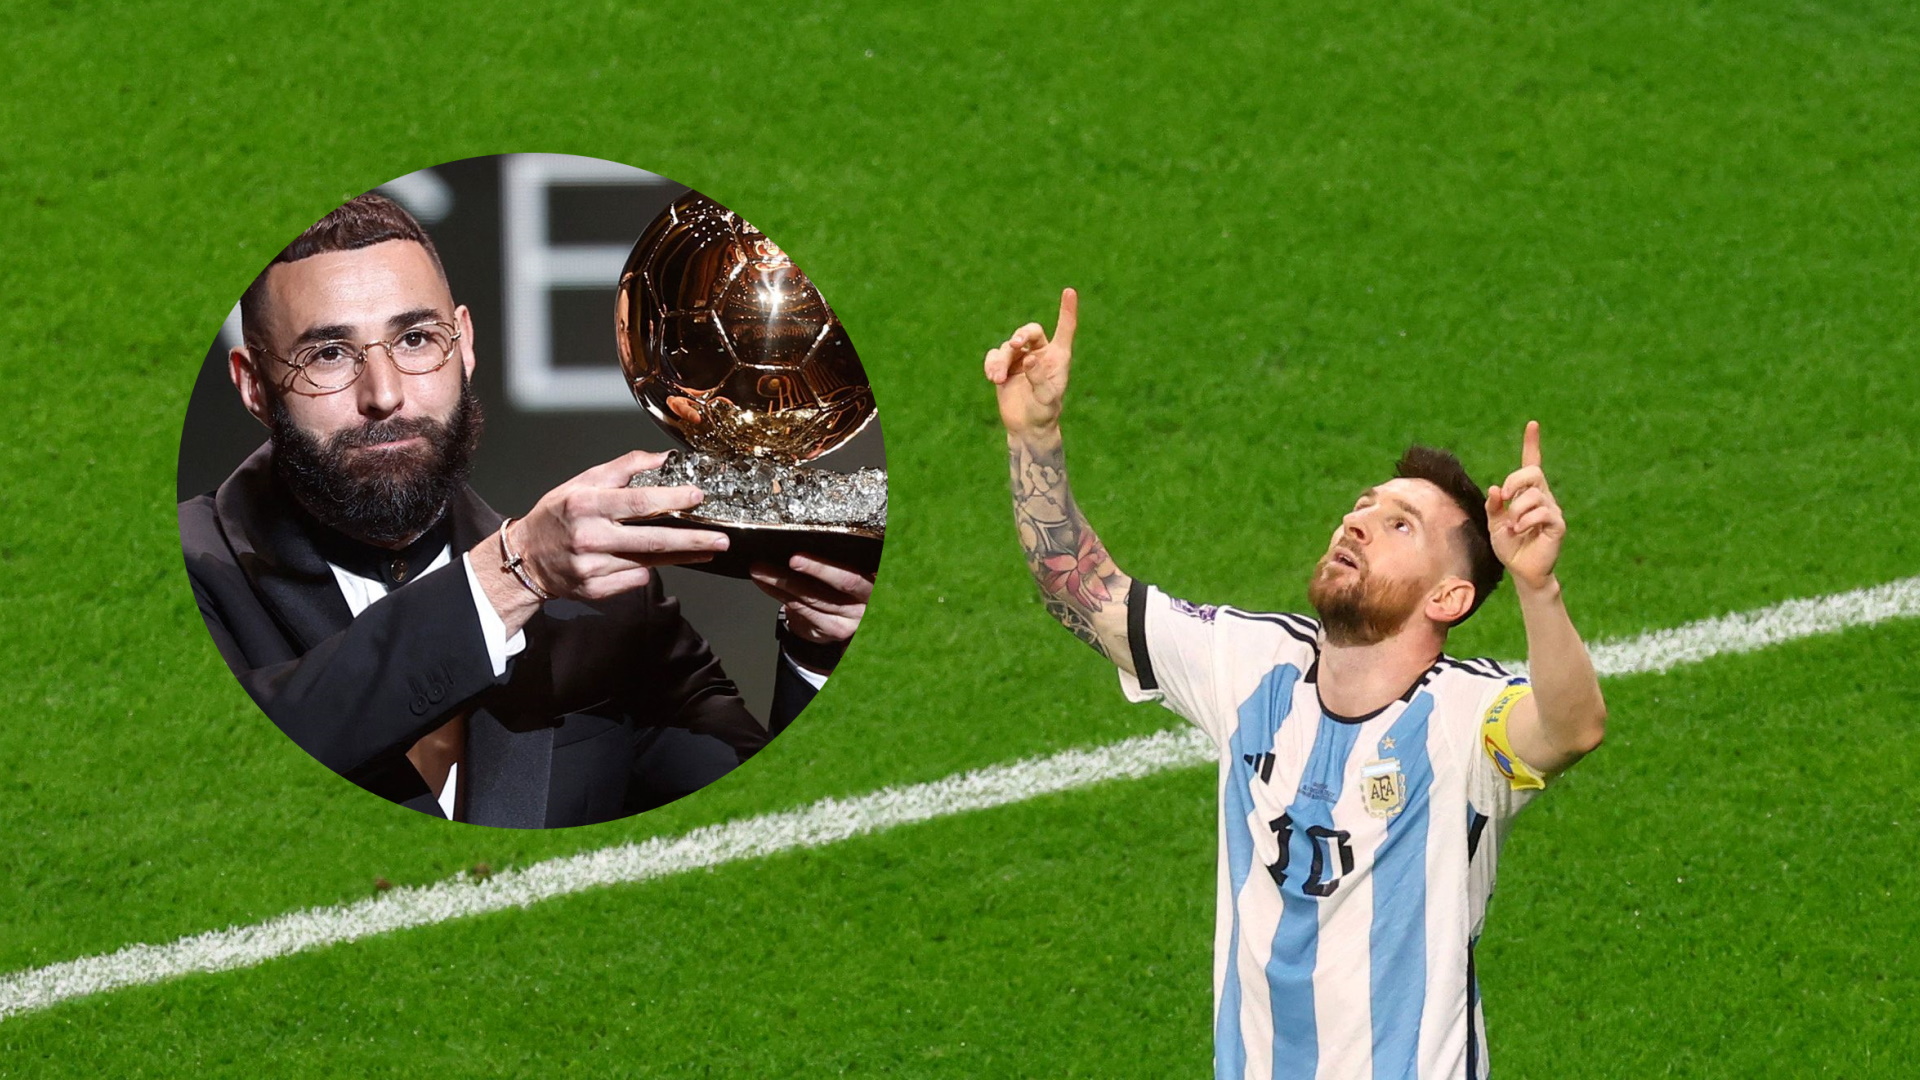 “Benzema, entregale tu Balón de Oro a Messi”: fuerte editorial de un periodista español tras la clasificación argentina a los cuartos del Mundial Qatar 2022